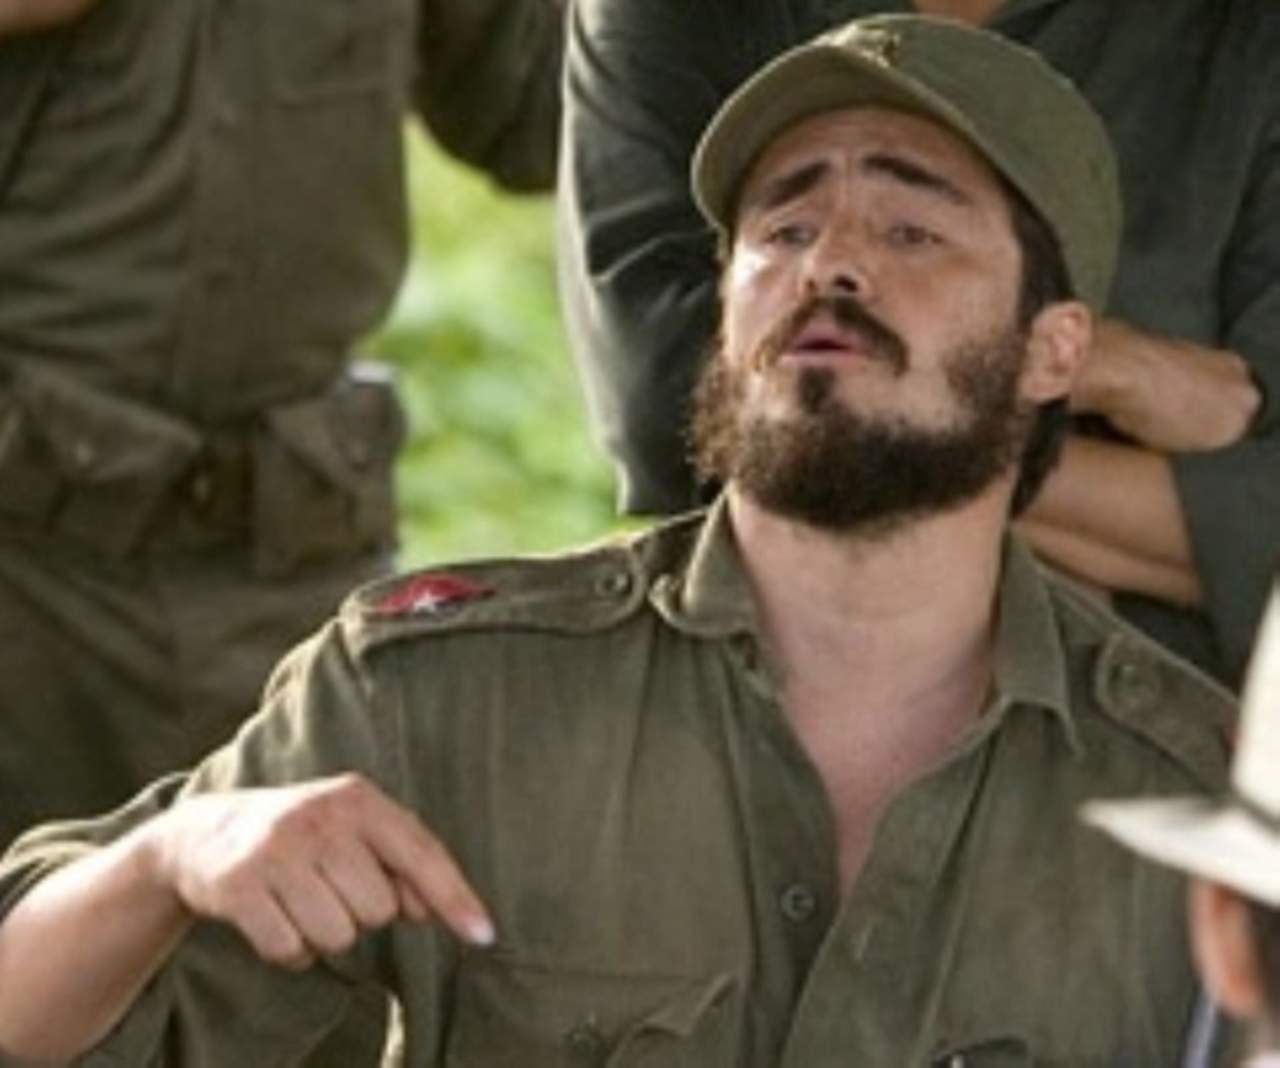 El actor encarnó a Fidel Castro en la película dirigida por Steven Soderbergh sobre el 'Che' Guevara. (ESPECIAL)